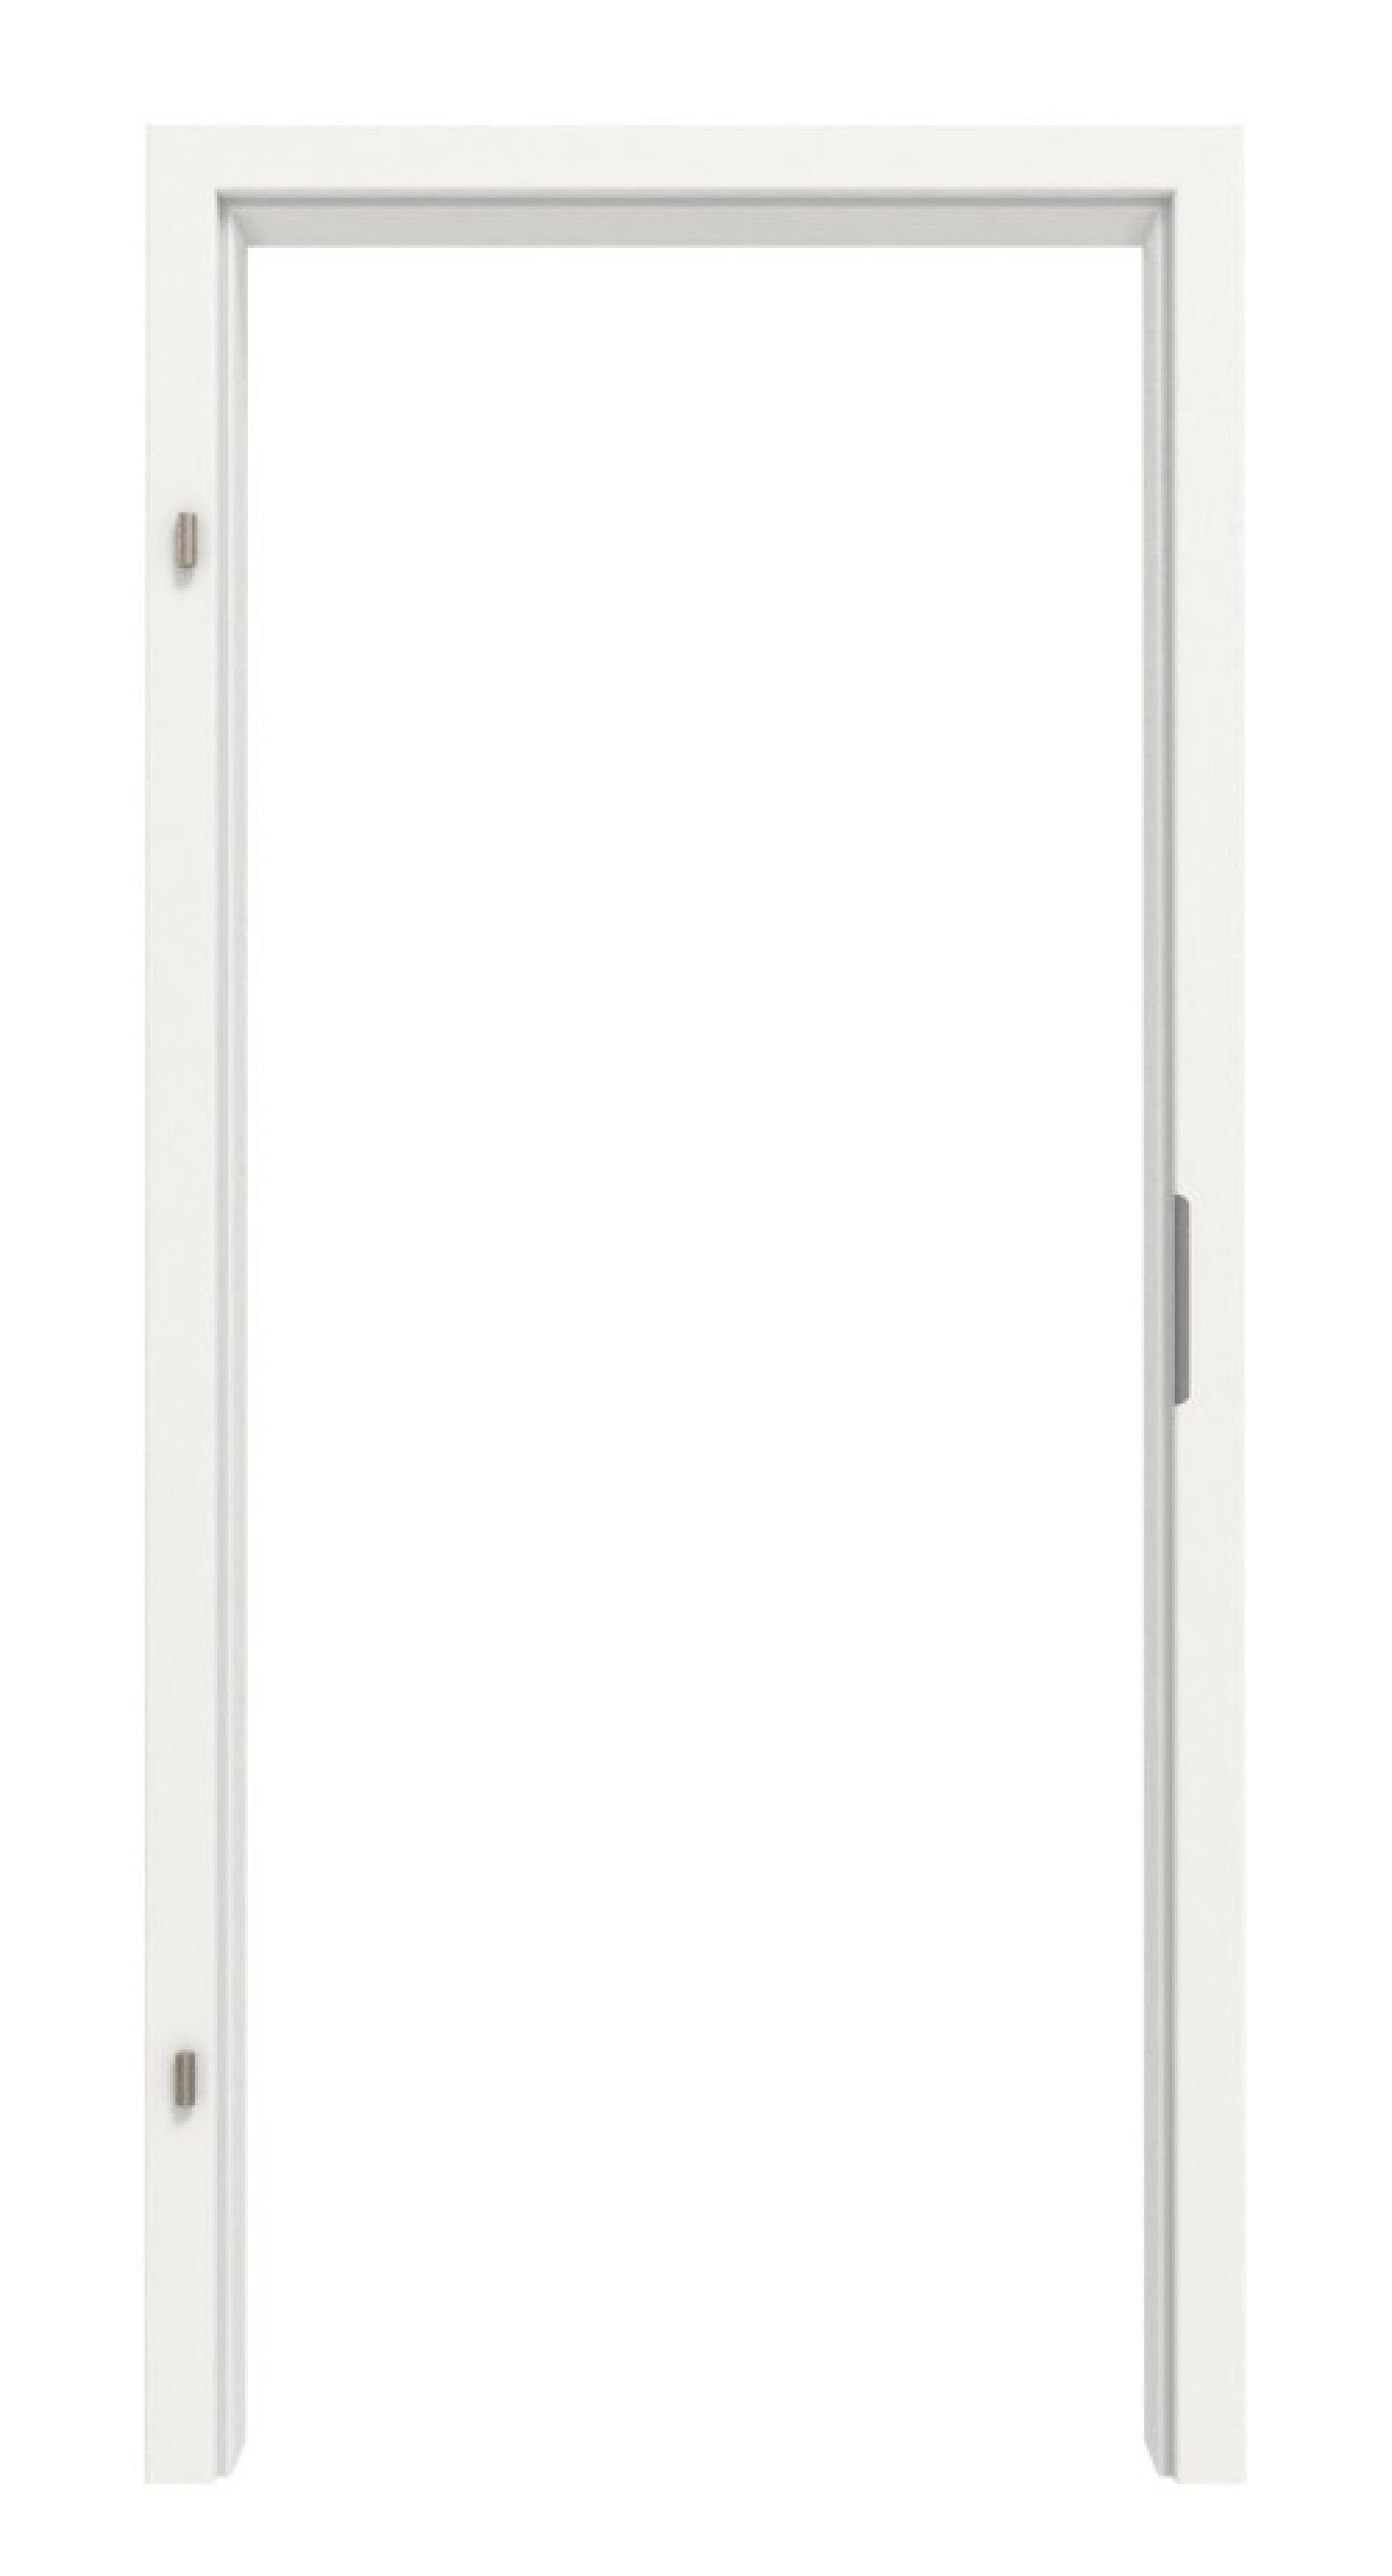 Frontansicht von LEBO Zarge für Schallschutztüren Weiß 9016 Lebolit-CPL mit runder Kante